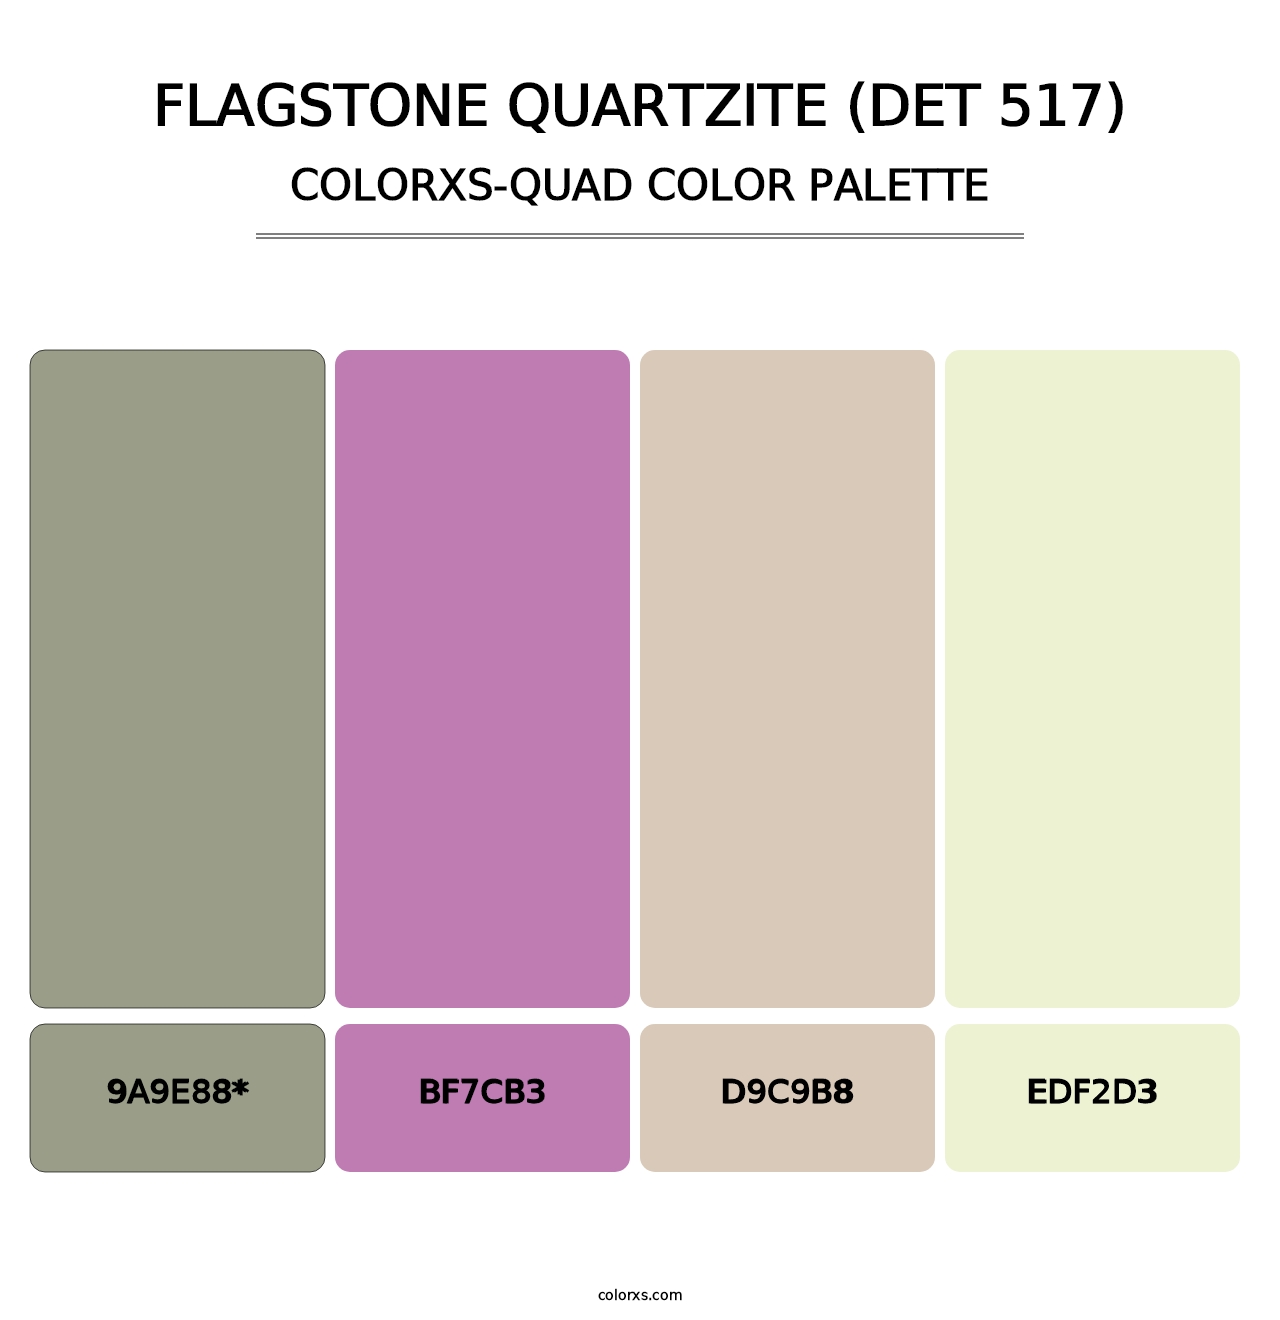 Flagstone Quartzite (DET 517) - Colorxs Quad Palette